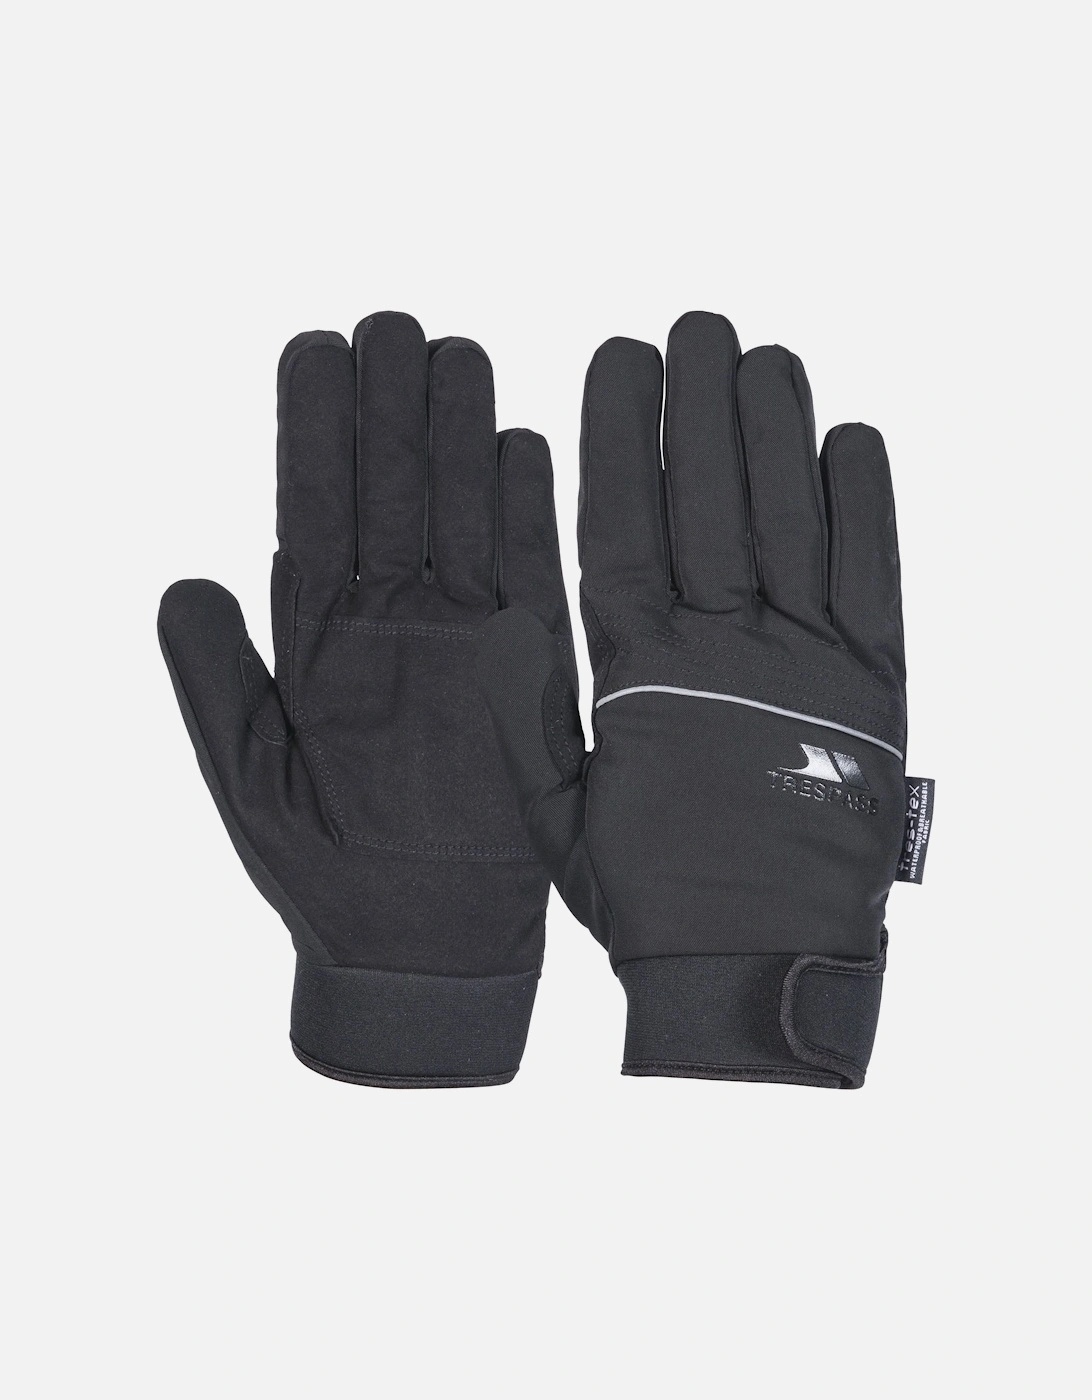 Adults Cruzado Waterproof Gloves - Black, 4 of 3